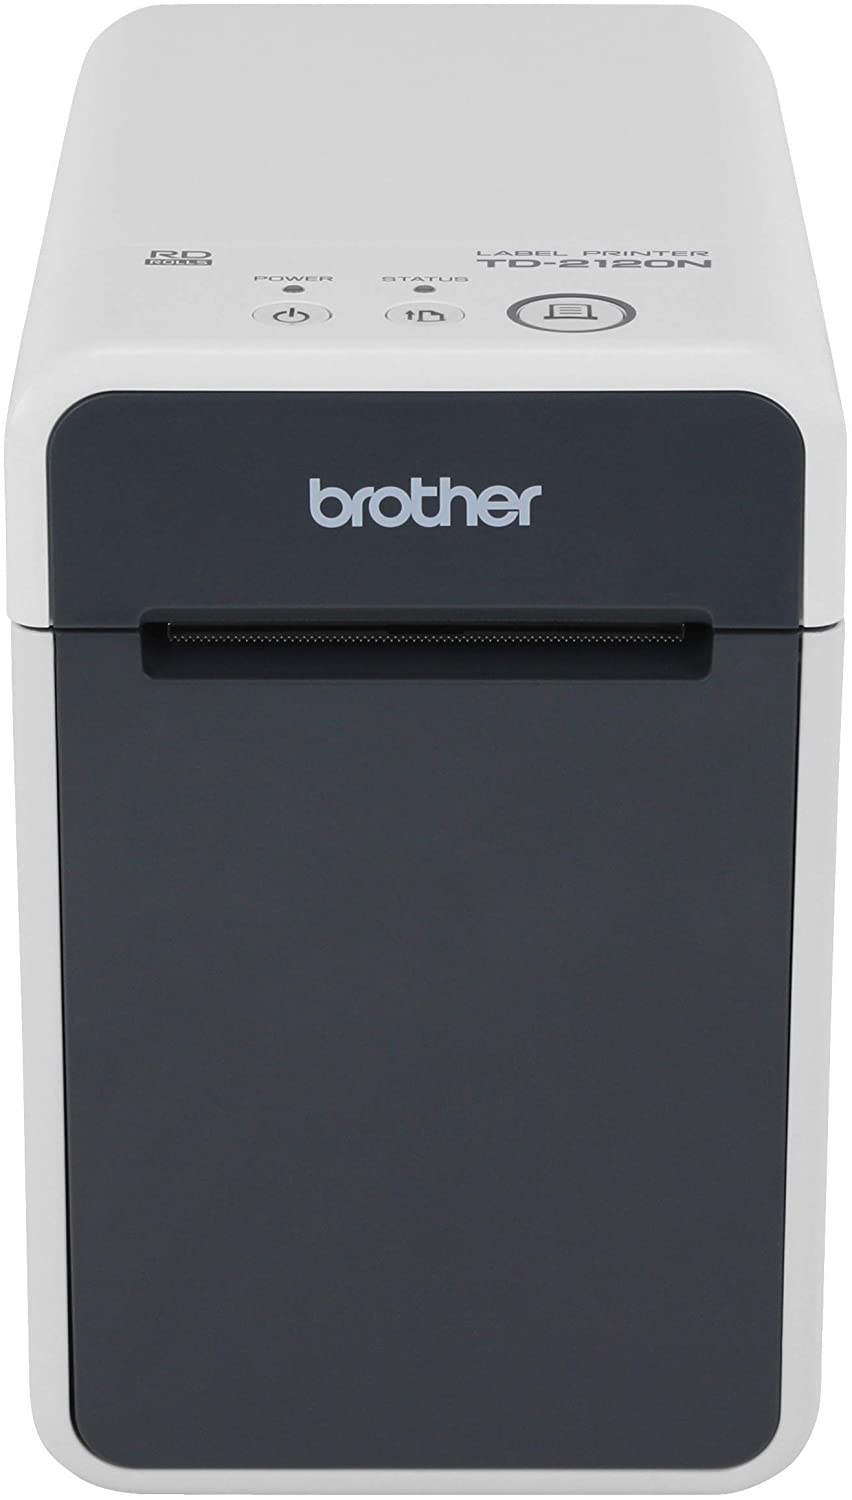 Brother TD2120N Imprimante d'étiquettes thermique professionnelle USB - Carte réseau - Résolution 203 dpi - Vitesse 152,4 mm